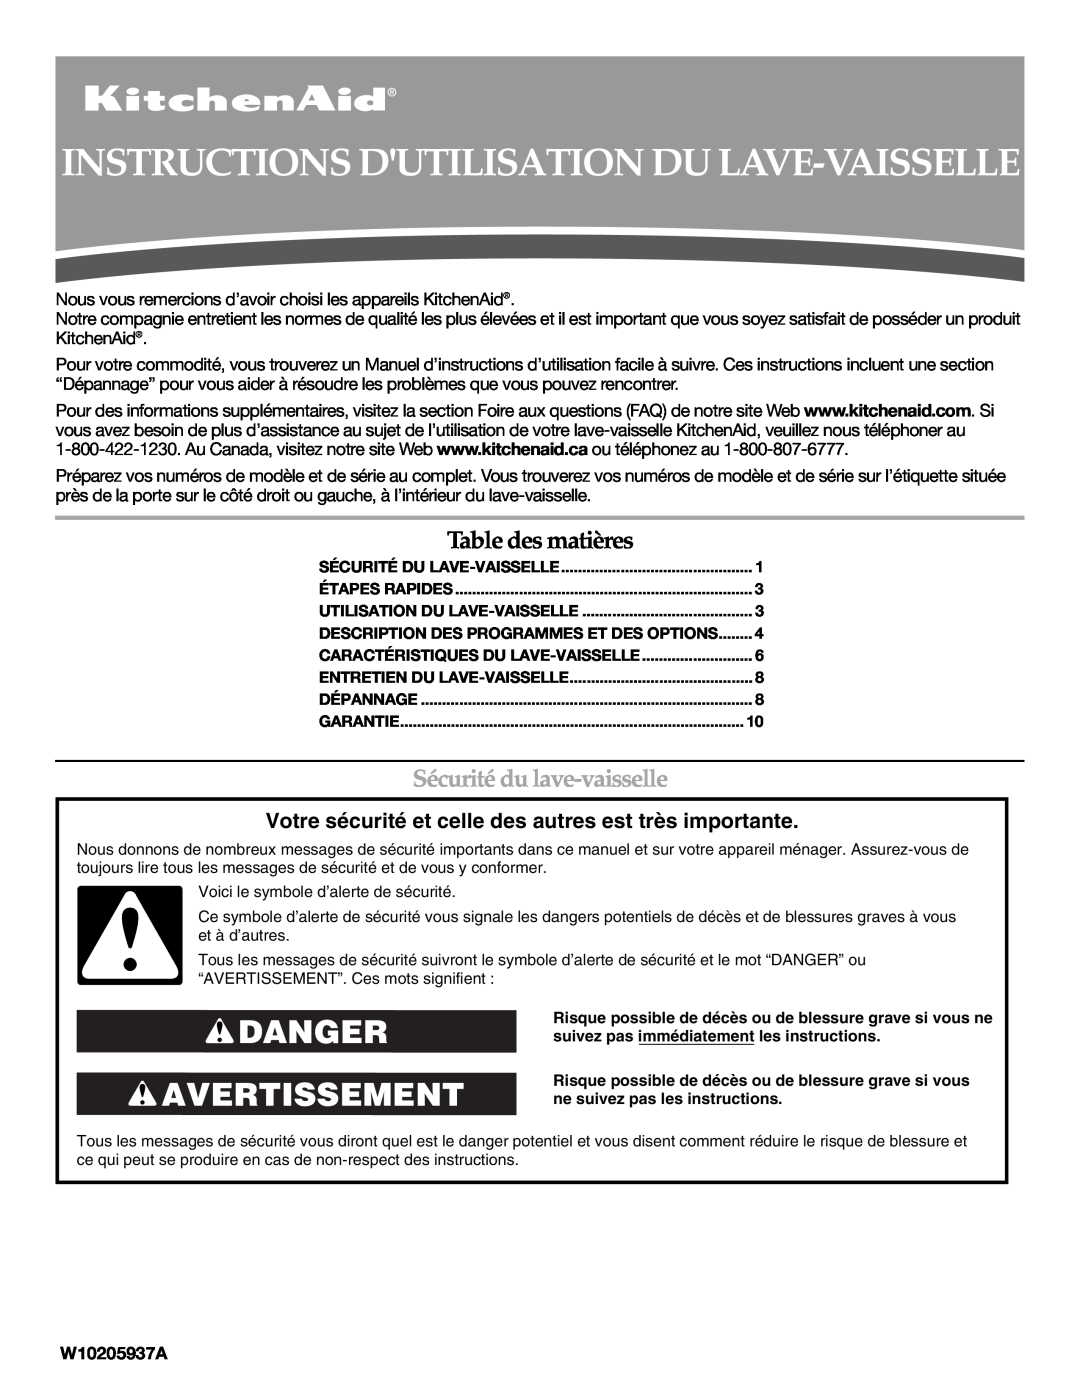 KitchenAid W10205937A, W10205938 Instructions Dutilisation Du Lave-Vaisselle, Danger Avertissement, Table des matières 